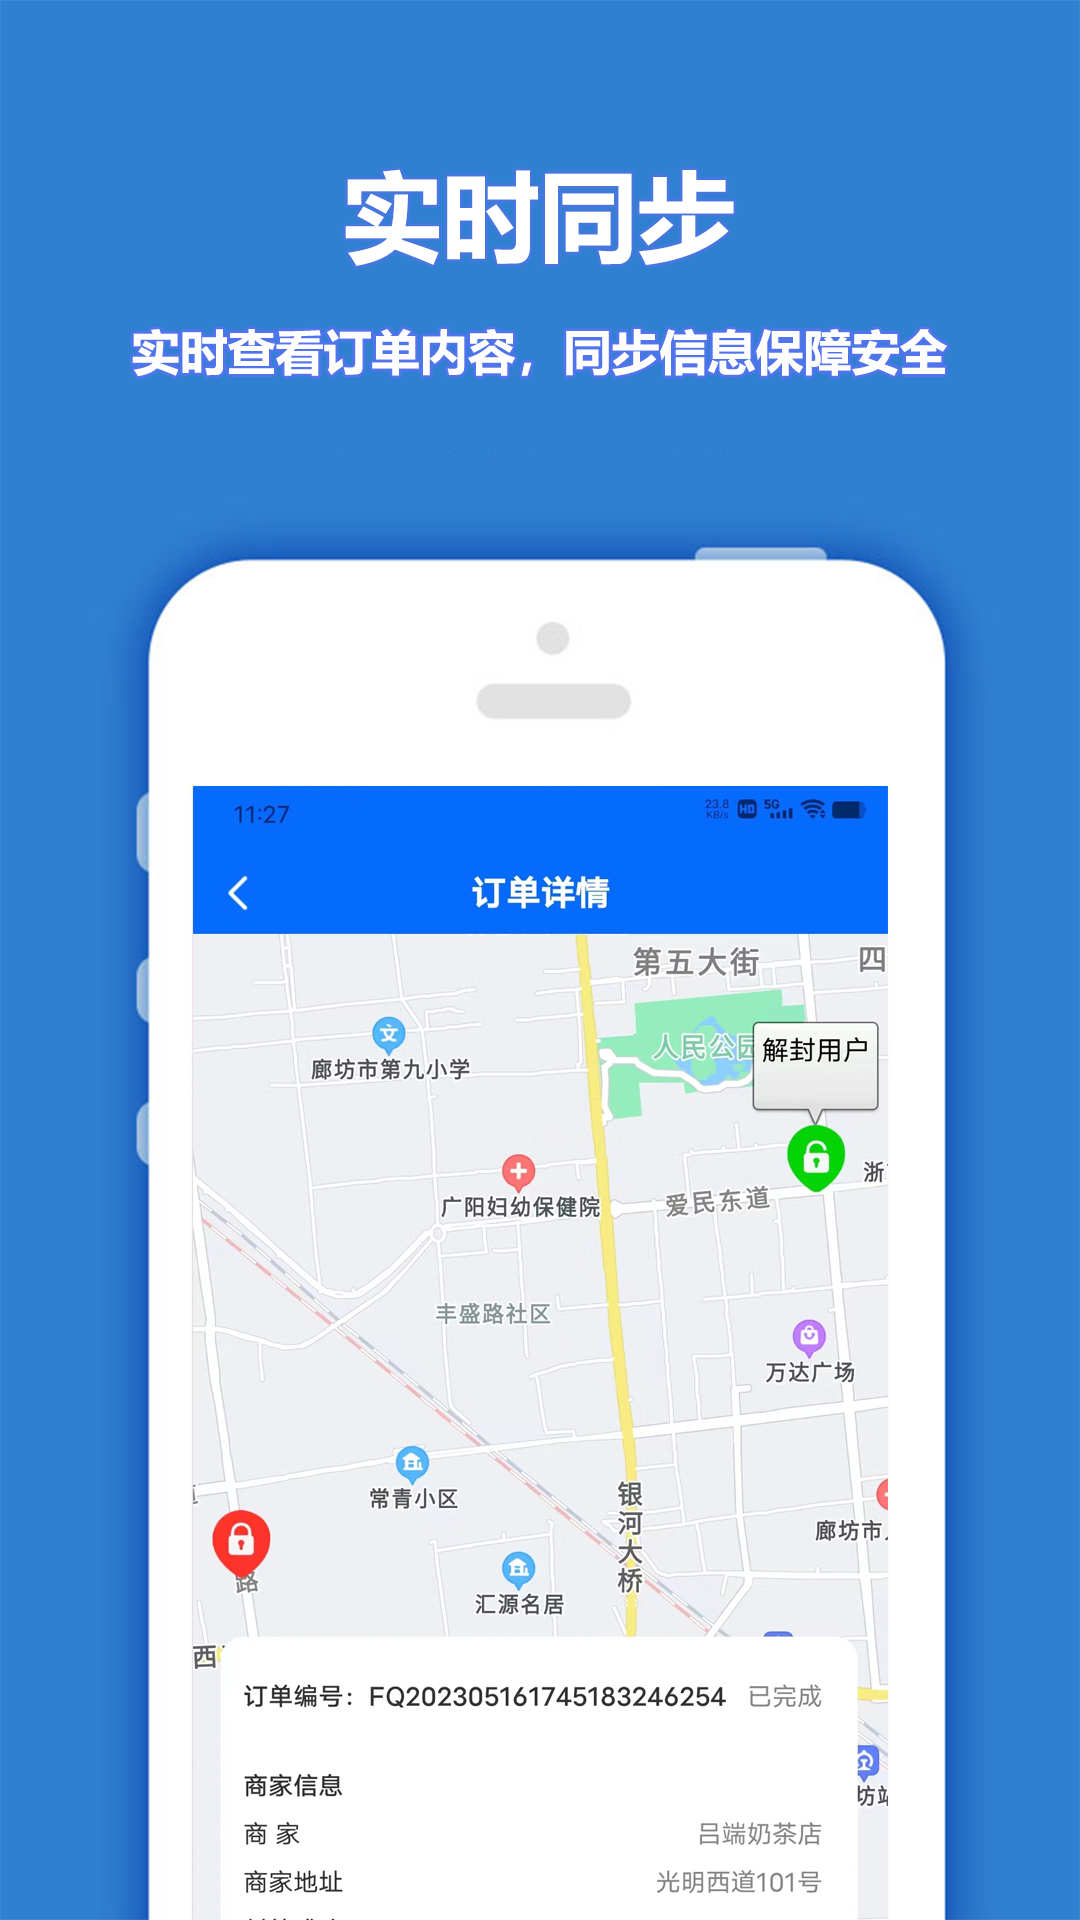 尚尚骑手app下载,尚尚骑手app官方版 v1.0.0